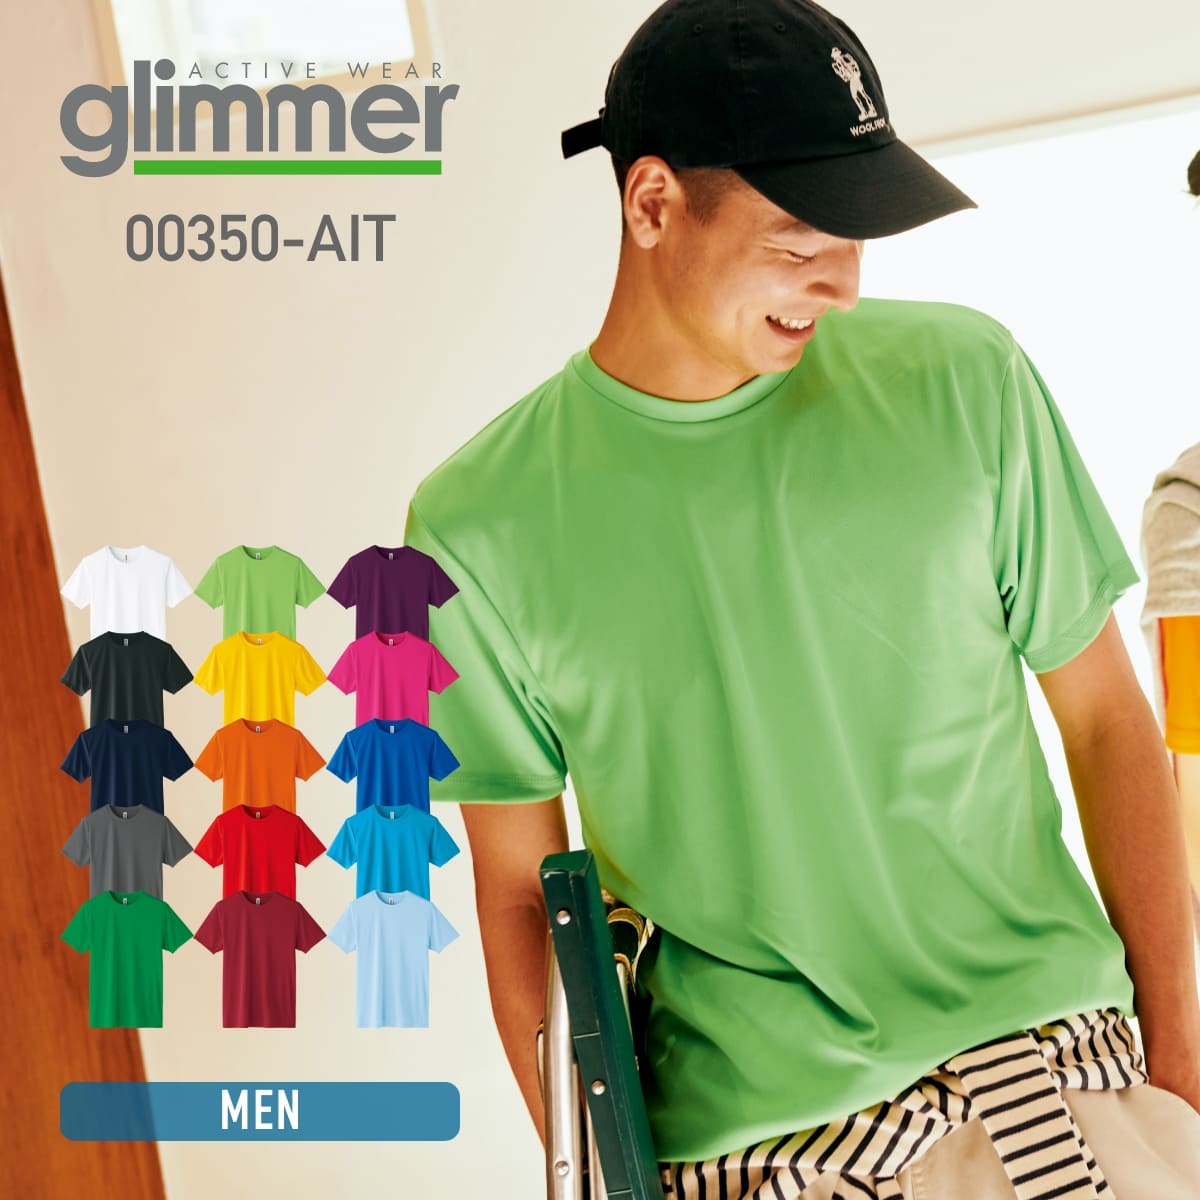 glimmer/Tシャツ一覧 – Tshirt.stビジネス